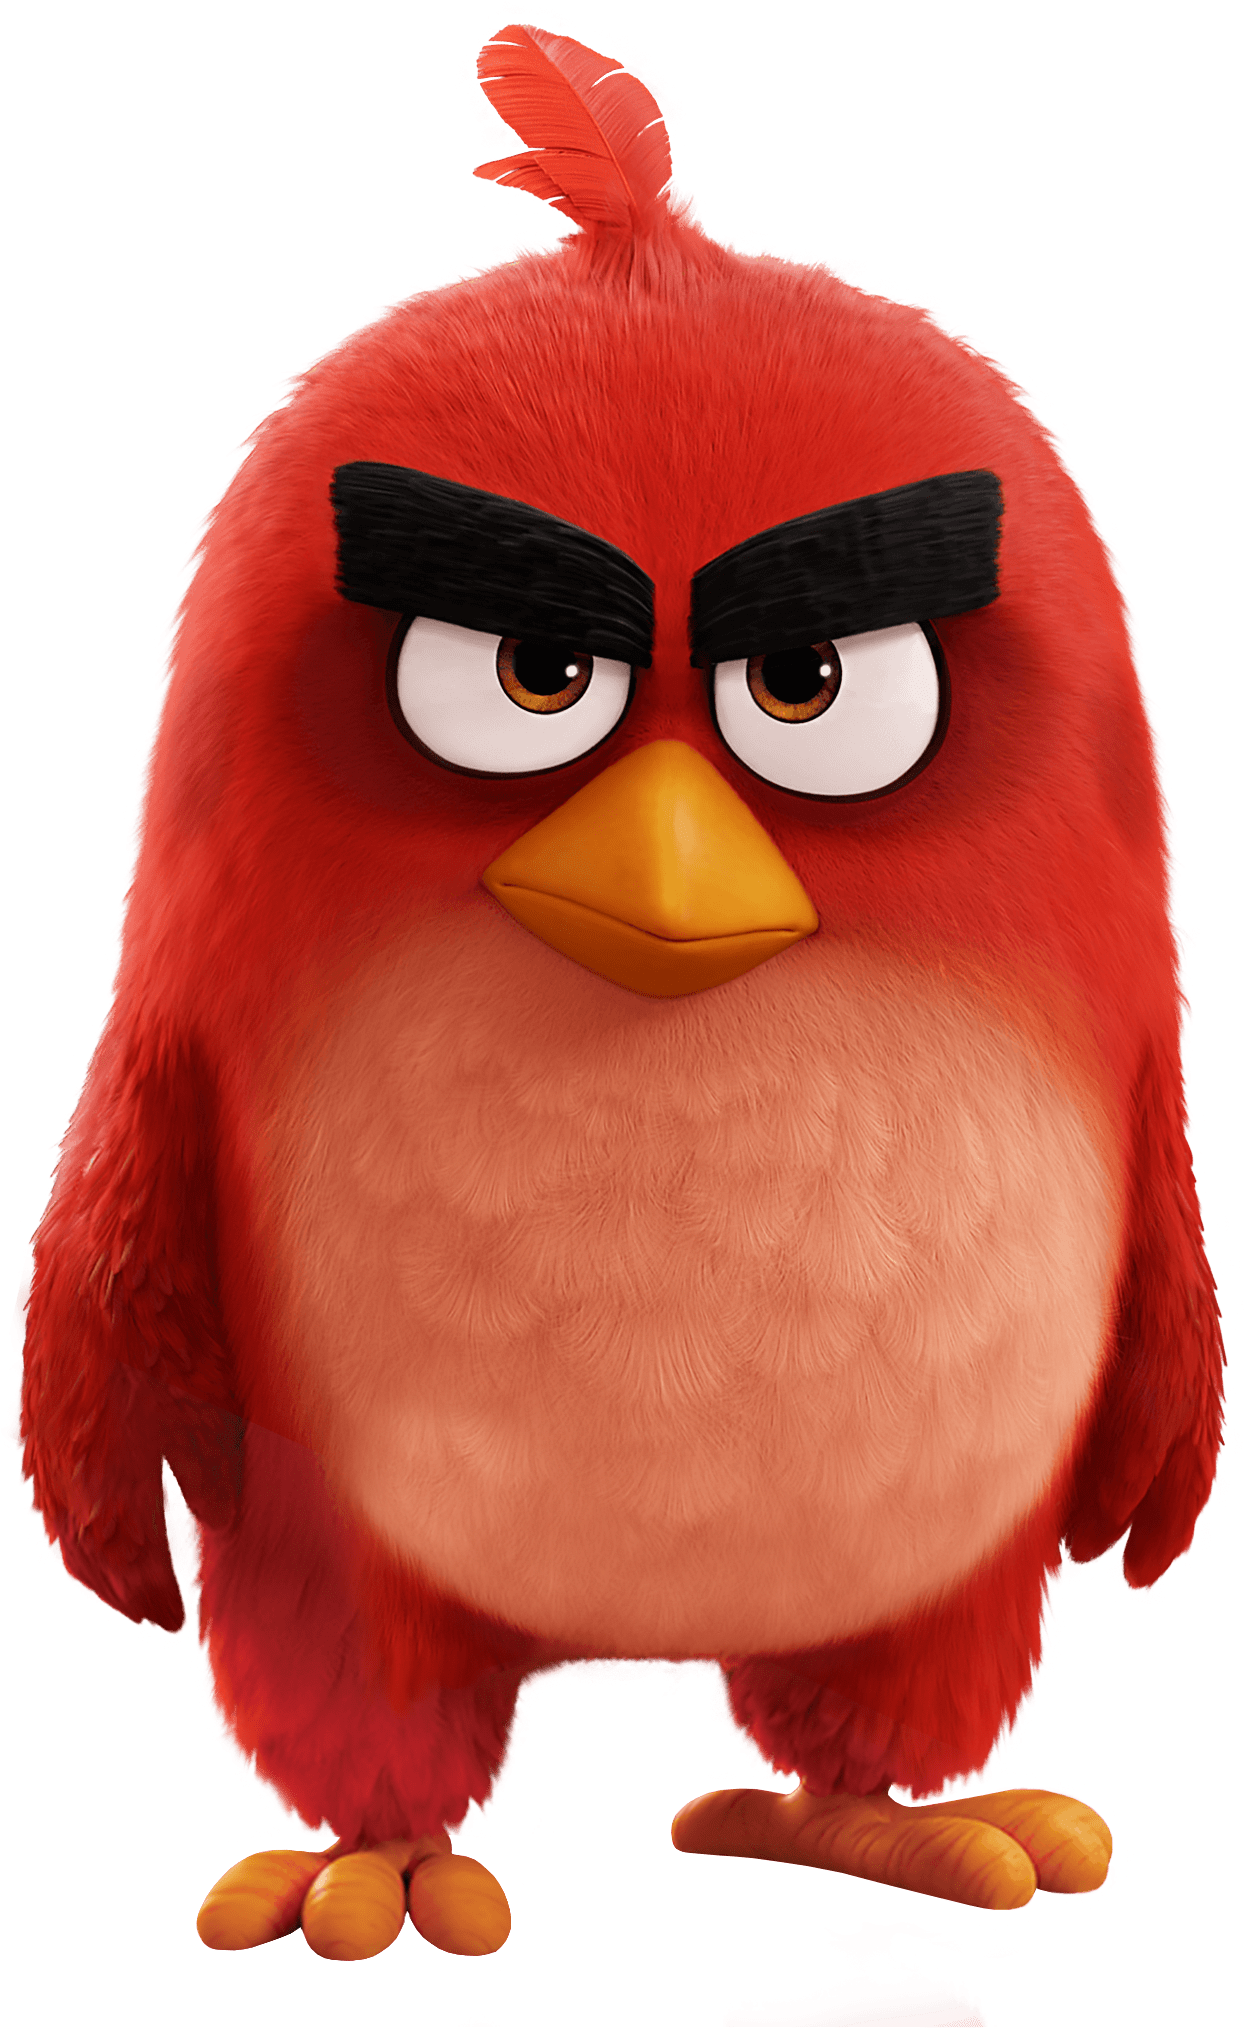 Angry Birds Movie Red Bird - Angry Birds Movie Red (1377x2068)